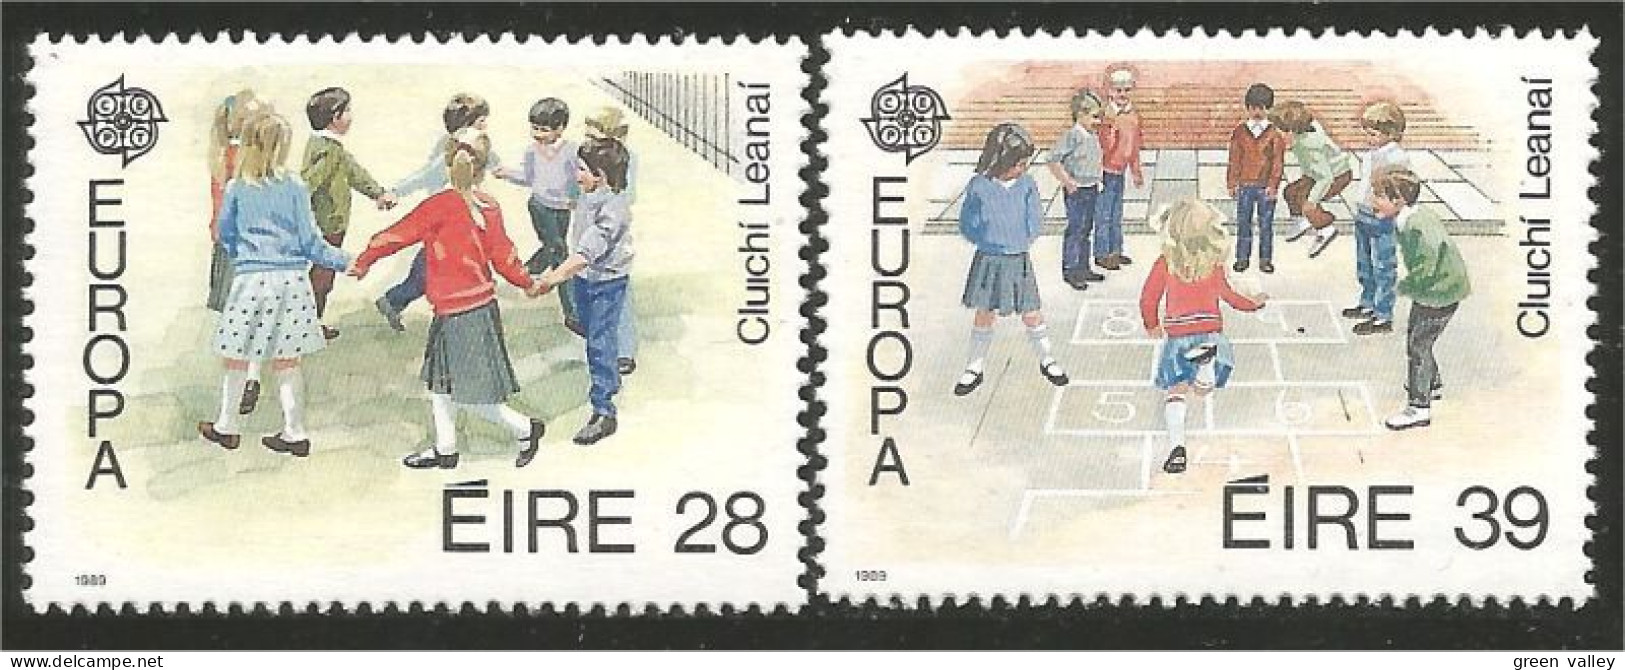 EU89-5b EUROPA-CEPT 1989 Irlande Jeux Enfants Children Games Kinderspiele MNH ** Neuf SC - Unclassified